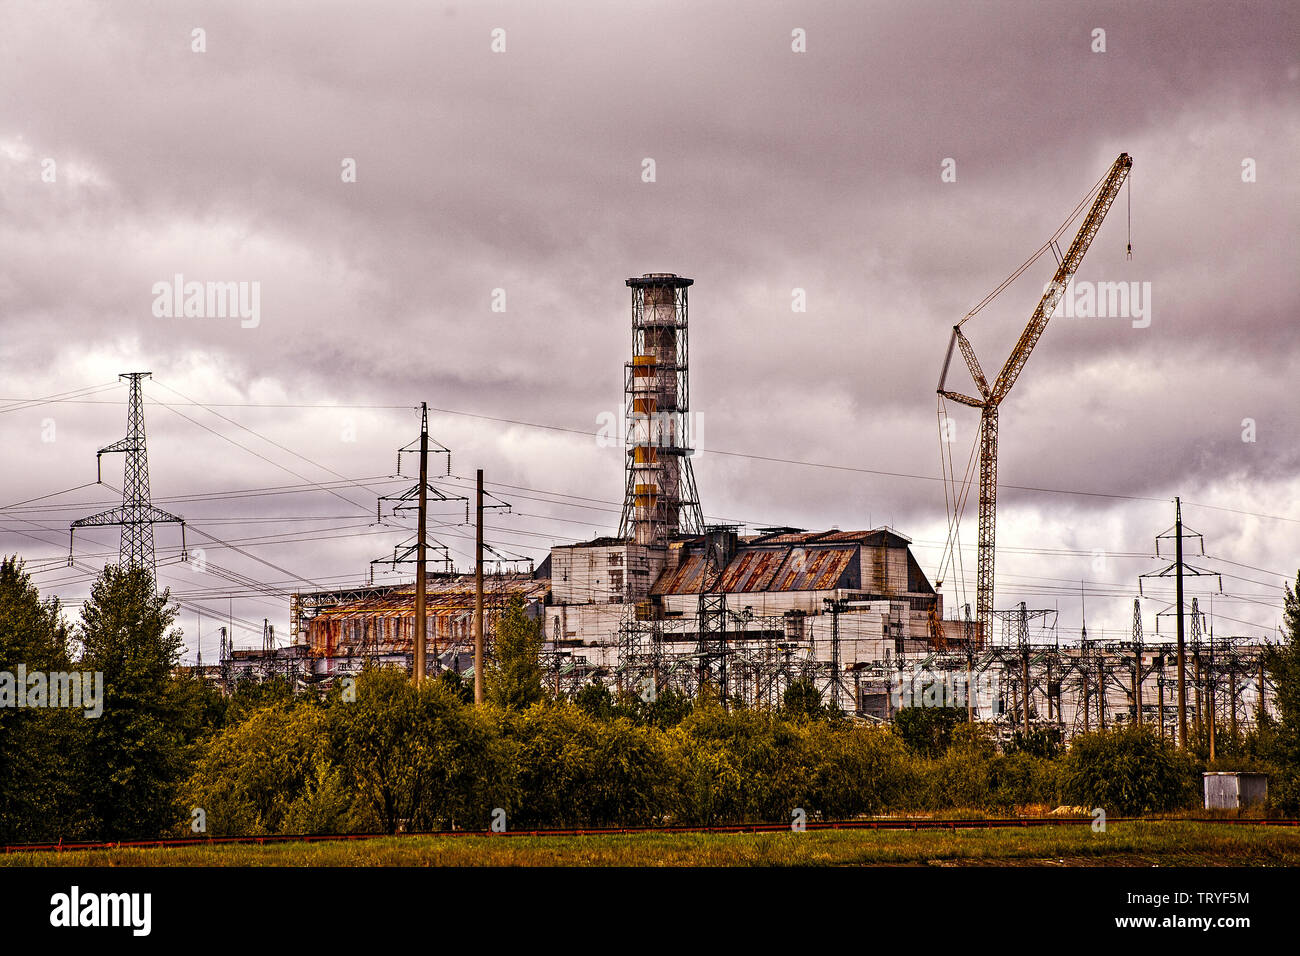 Tschernobyl, Ukraine Pripryat. Dies ist Reaktor 4, der Reaktor, der Feuer gefangen und verursachte den nuklearen Unfall die Tschernobyl ein Haushalt Name, und schließlich durch den Fall der Berliner Mauer. Es liegt an der Pripryat Fluss, der mit dem der Kern zu kühl war. Es ist eines von sechs Reaktoren alle nah beieinander. Das Kernkraftwerk Tschernobyl liegt im Norden der Ukraine, nahe der Grenze zu Weißrussland. Tschernobyl selbst war in der Größe und Bedeutung, die die neuen Atomic Stadt Pripryat überholt, nur ein paar Kilomteres aus dieser Reaktor. Stockfoto